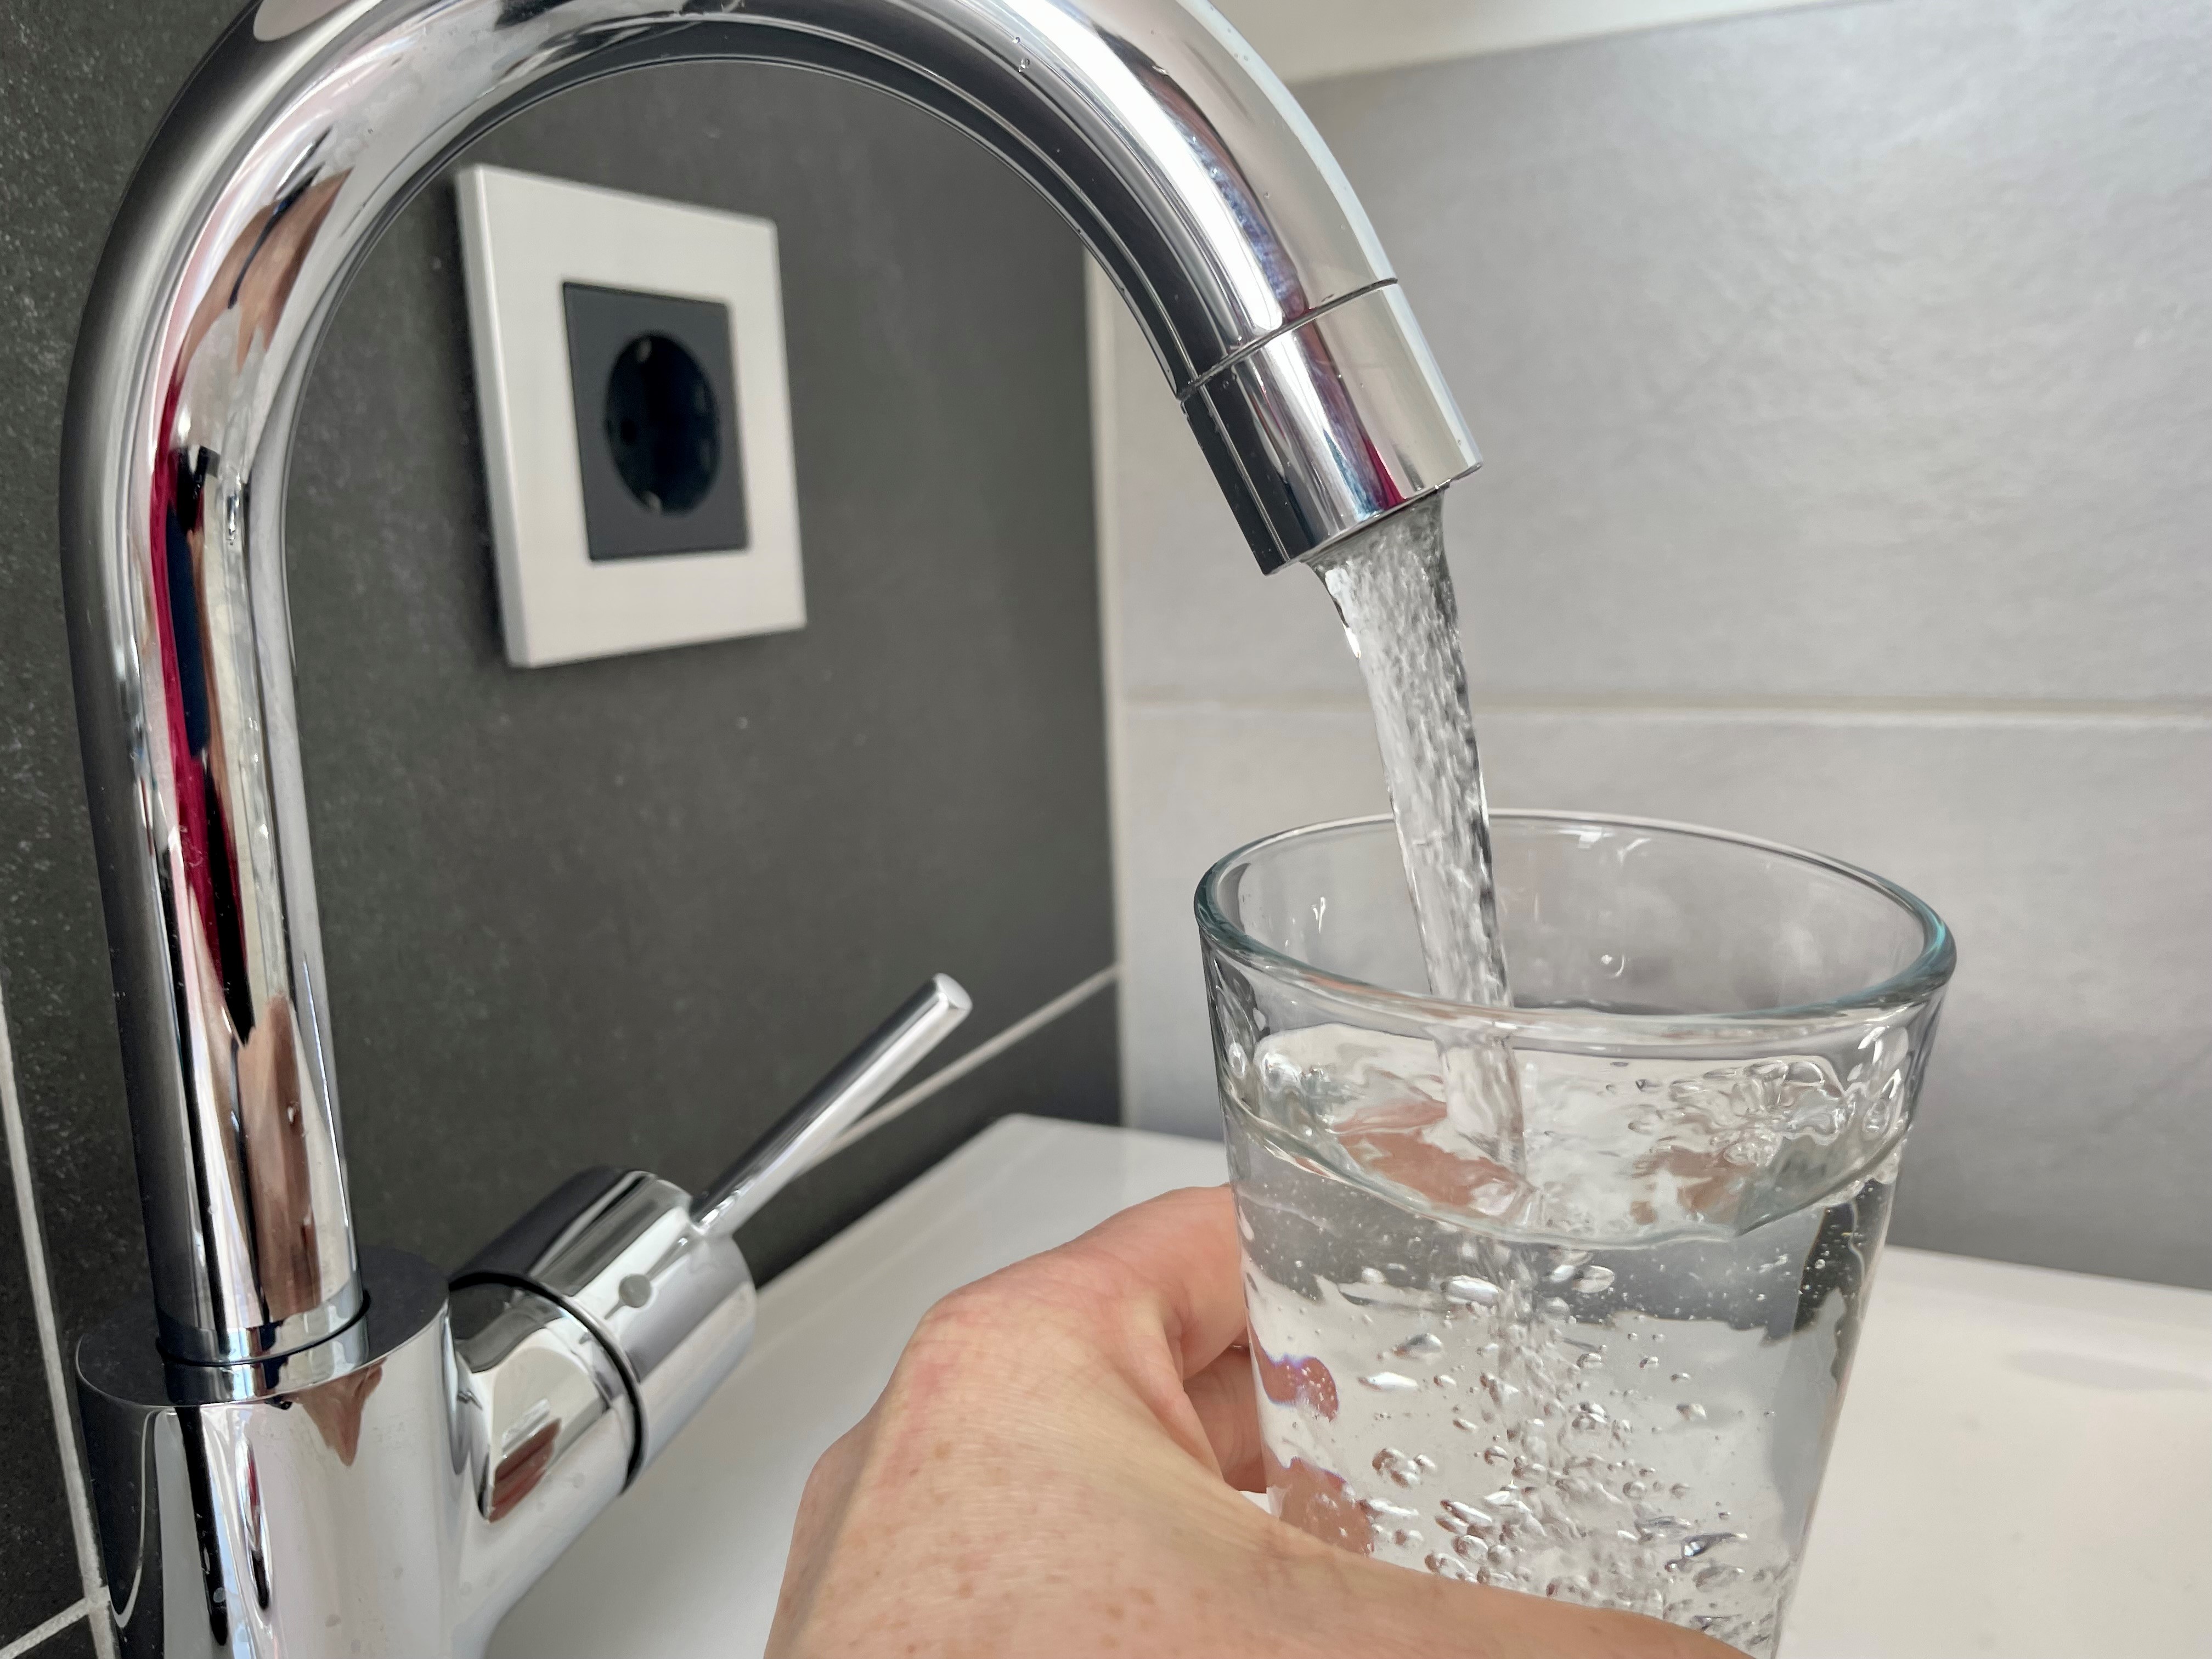 Gesundheitsamt gibt Tipps für einwandfreies Trinkwasser - Bleirohre und Legionellen bergen Gefahren - Wasserfilter werden nicht empfohlen